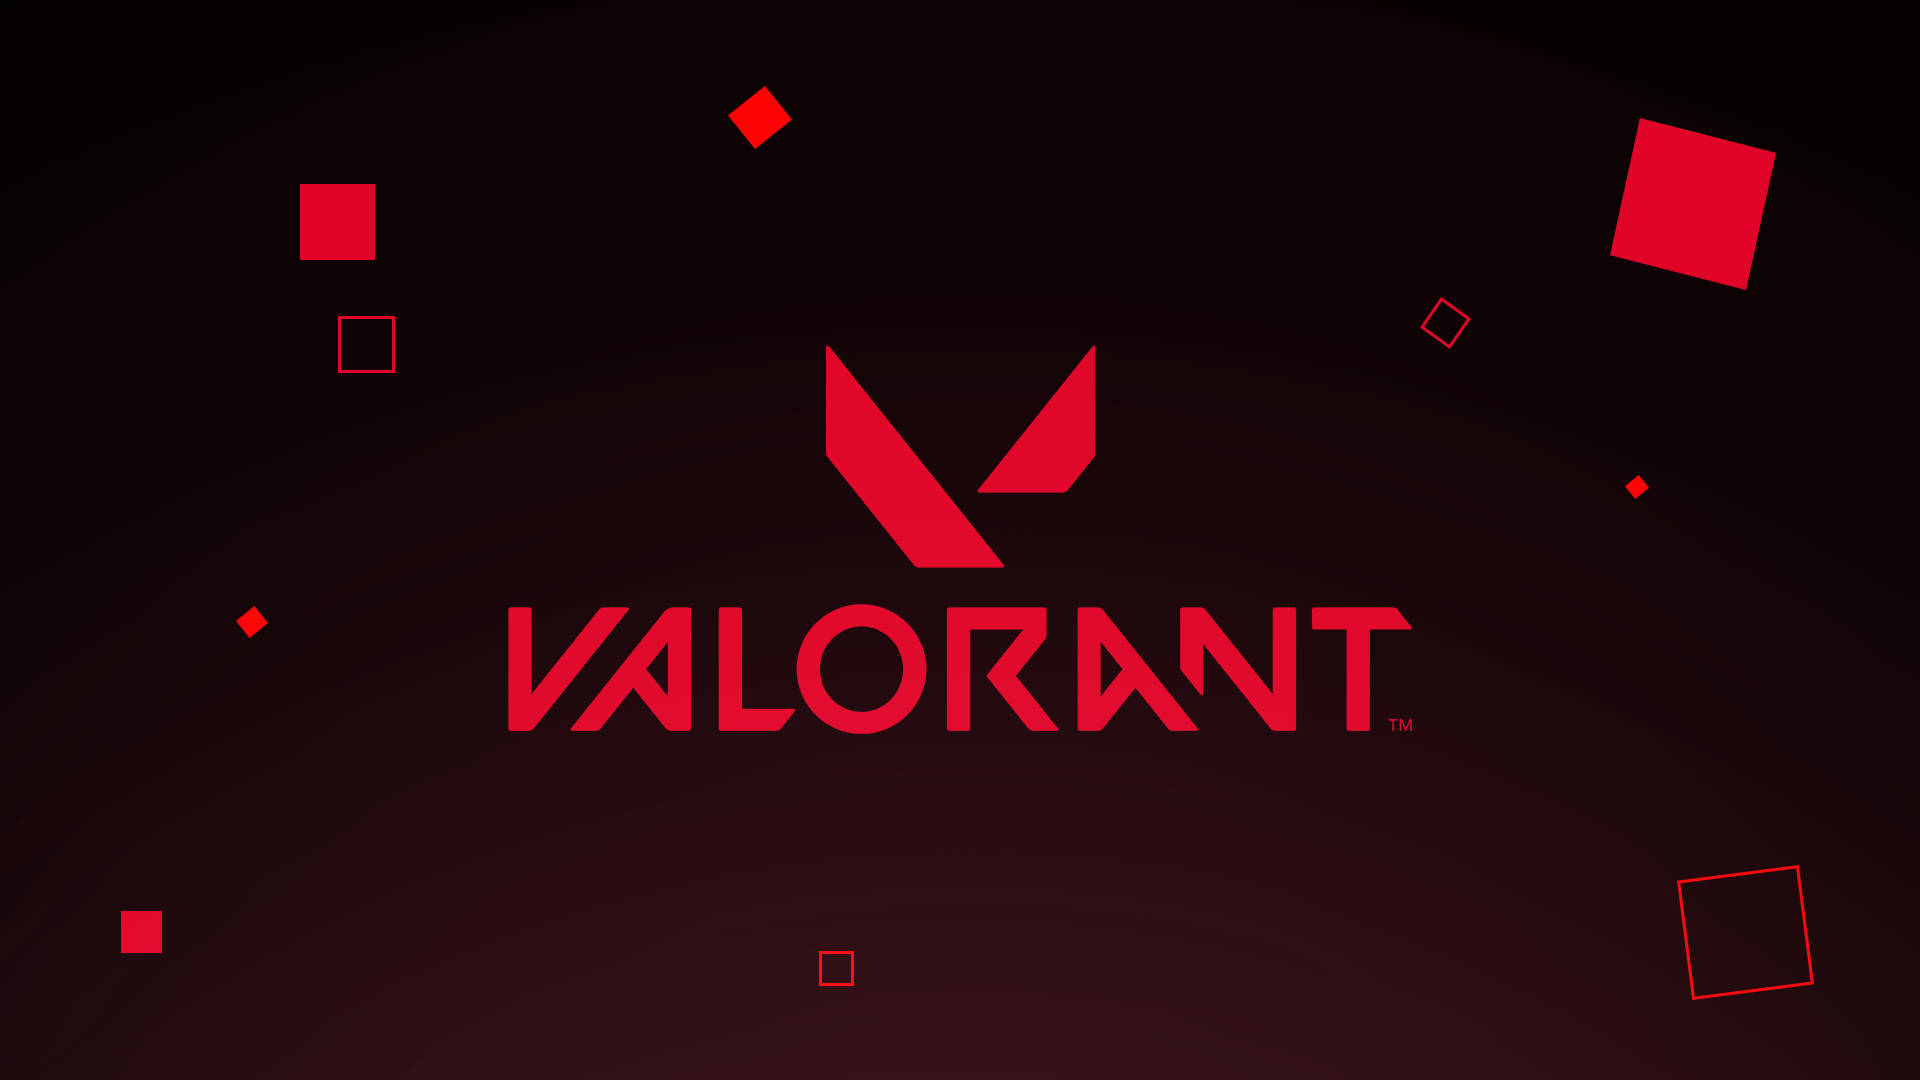 Logo của trò chơi Valorant đang trở thành một trong những hình nền được yêu thích nhất hiện nay. Hãy cùng ngắm nhìn bức ảnh hình nền với biểu tượng của trò chơi cực kỳ ấn tượng và sáng tạo này.